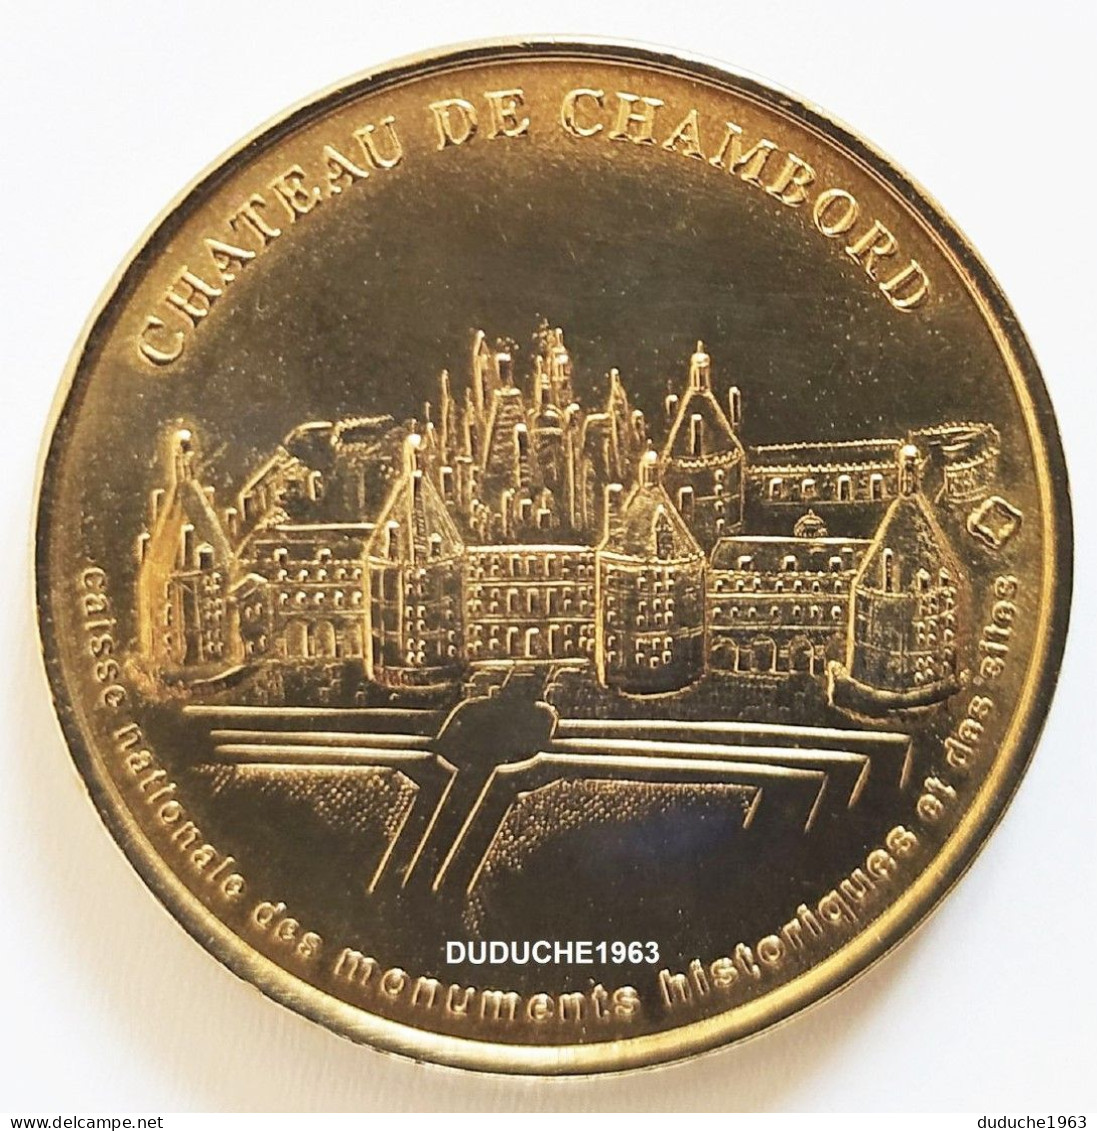 Monnaie De Paris 41. Château De Chambord 2005 - 2005